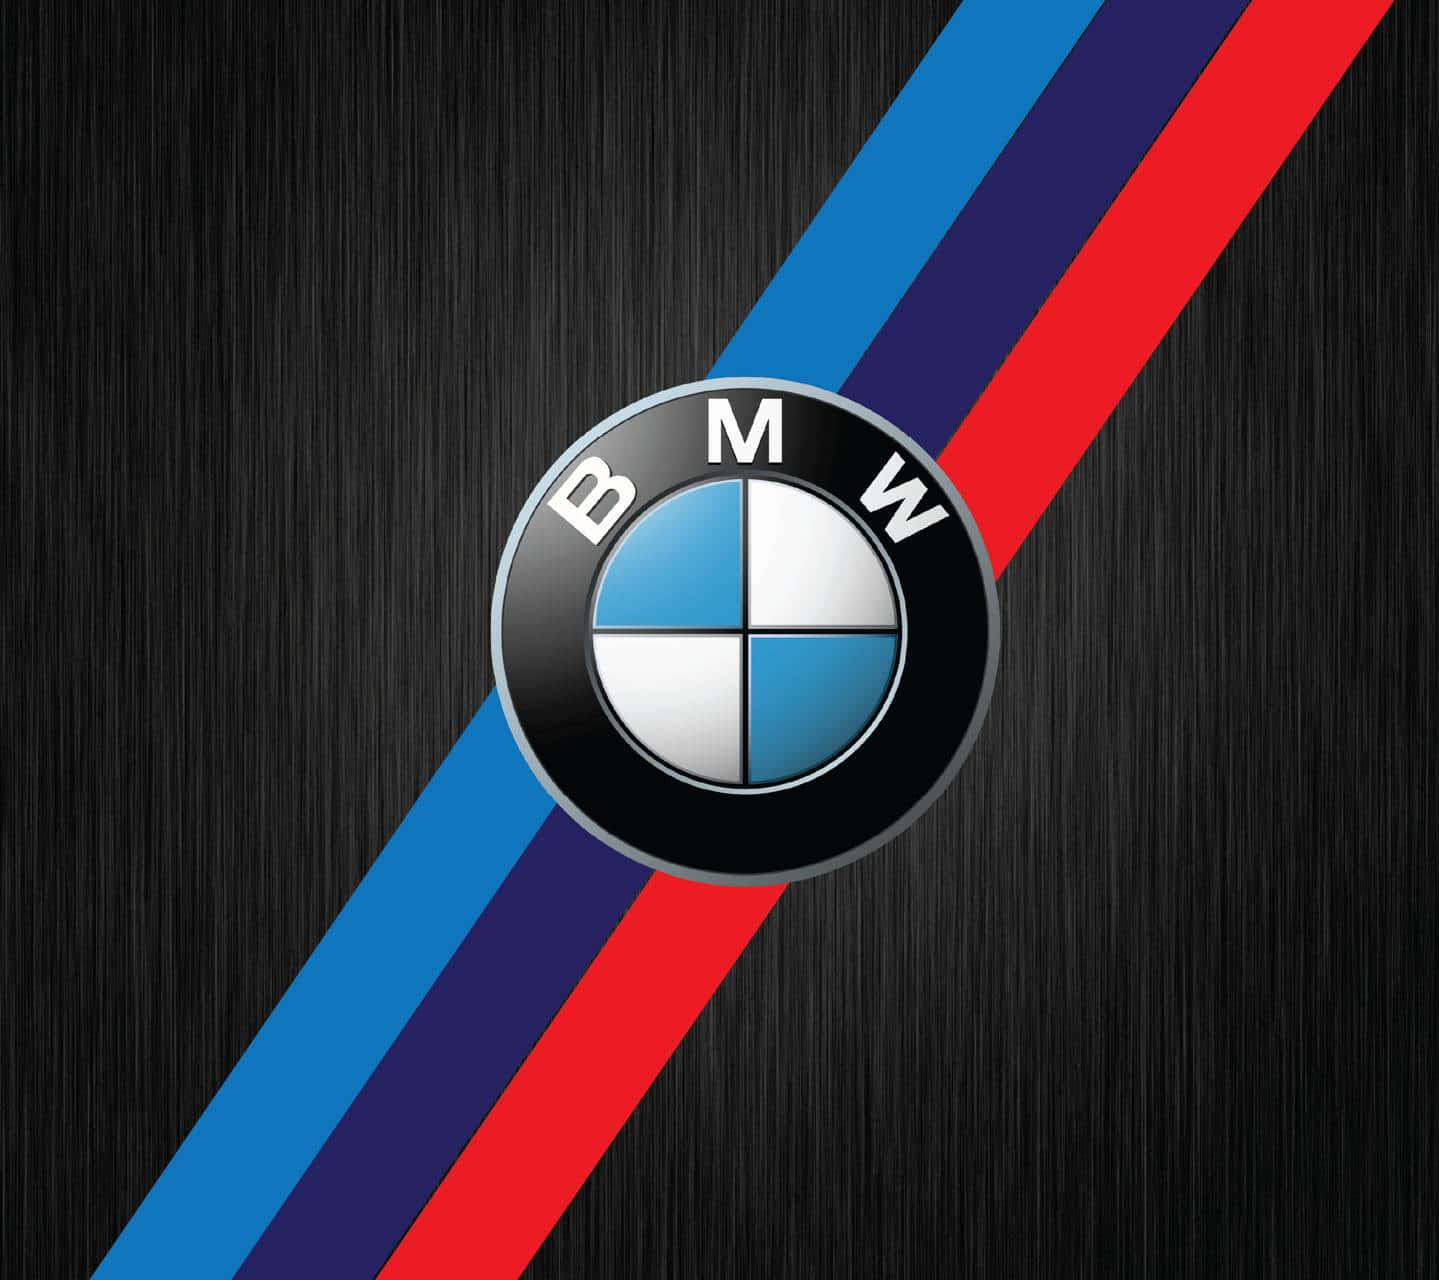 Fondode Pantalla De La Serie M De Bmw Con Logo Y Rayas En 720p.